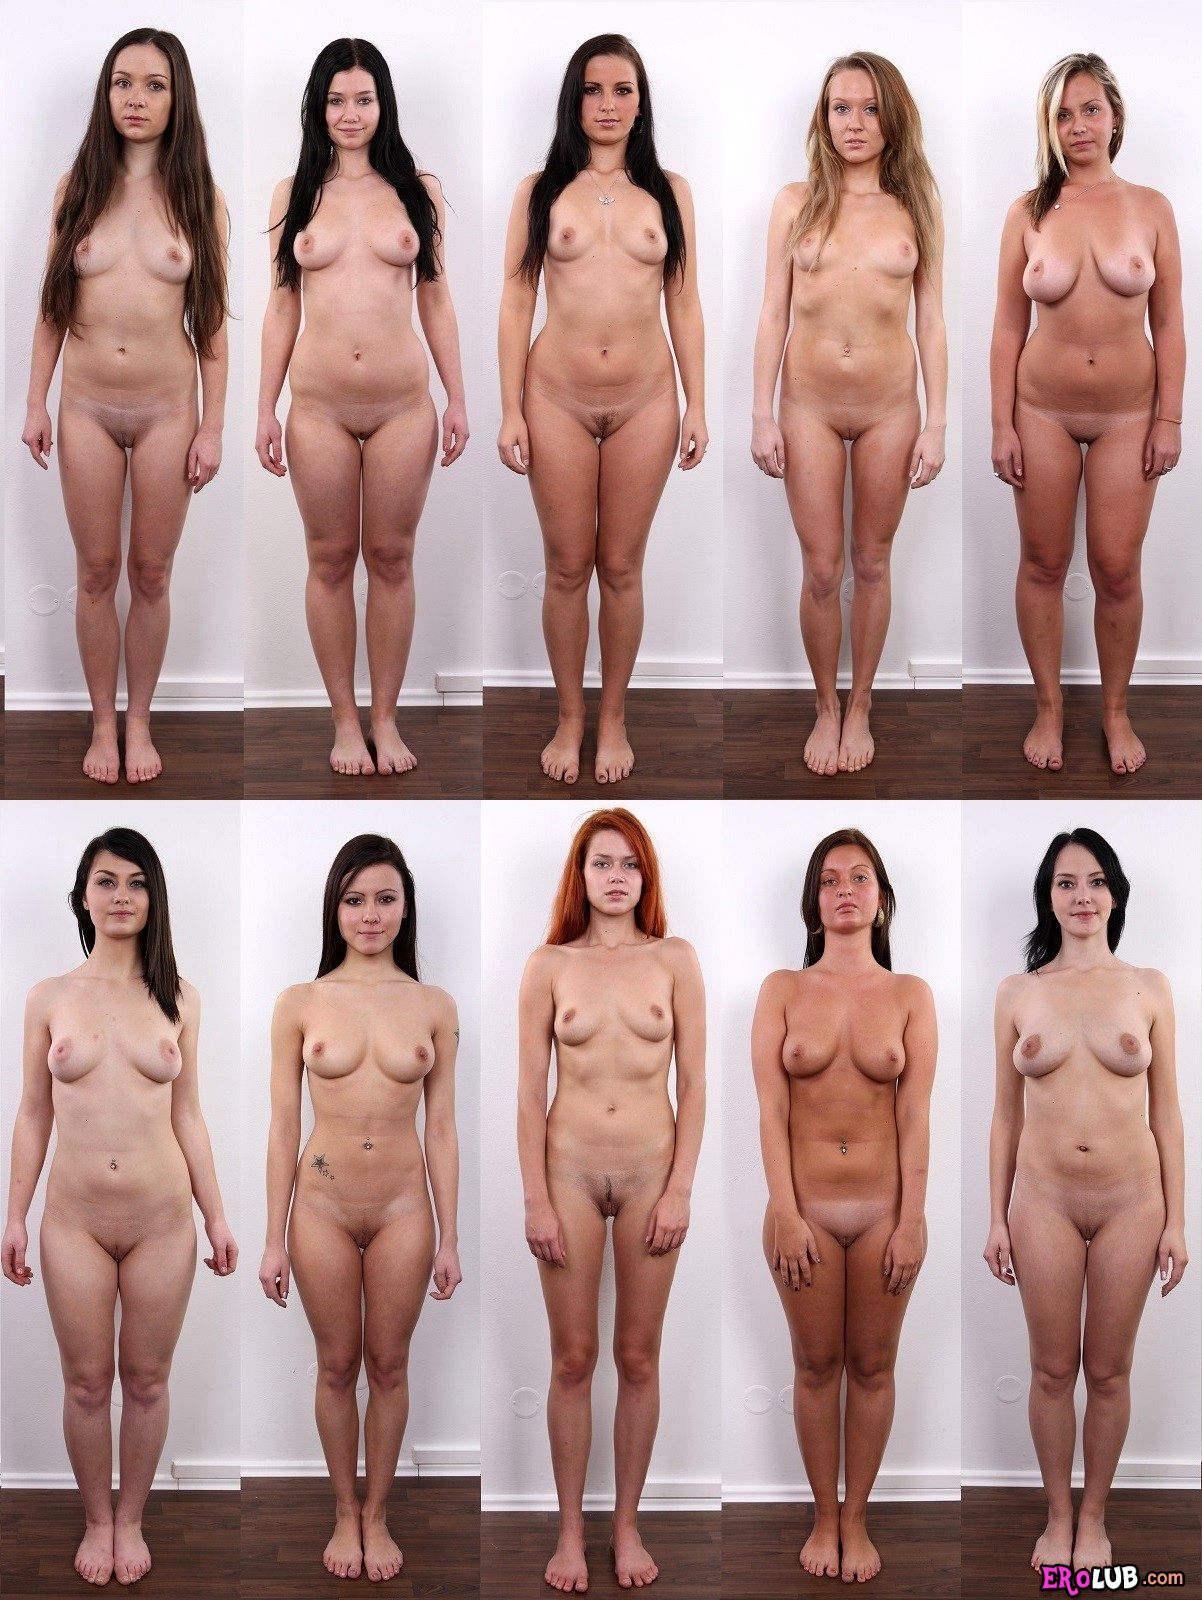 Девочки голые на кастинге. Смотреть русское порно видео бесплатно